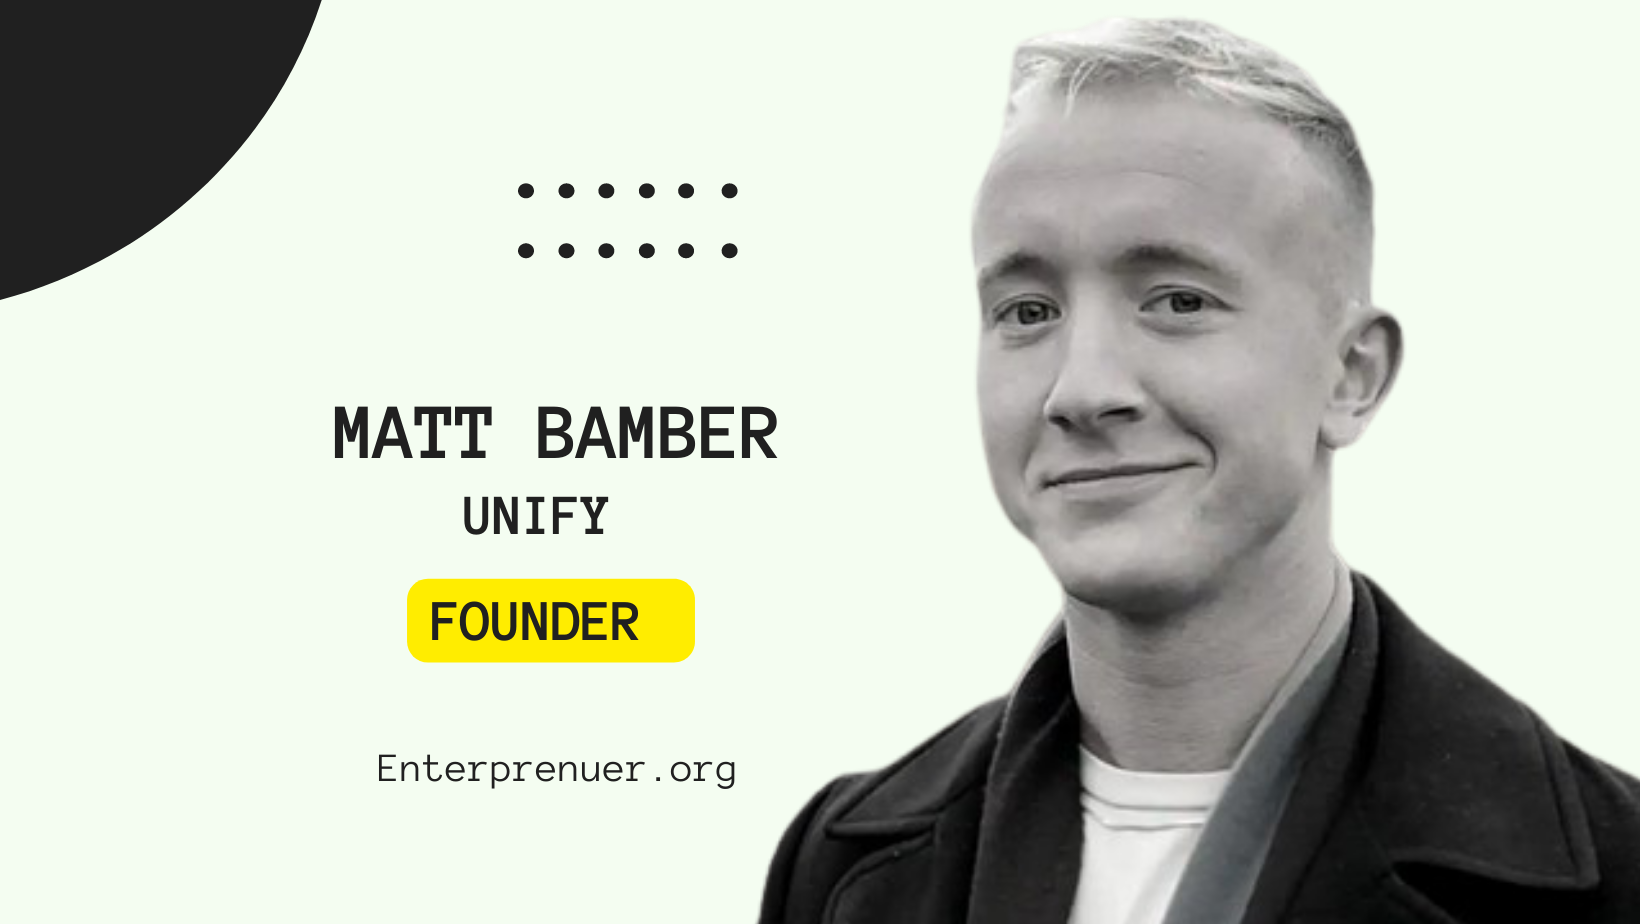 Matt Bamber Founder of Unify